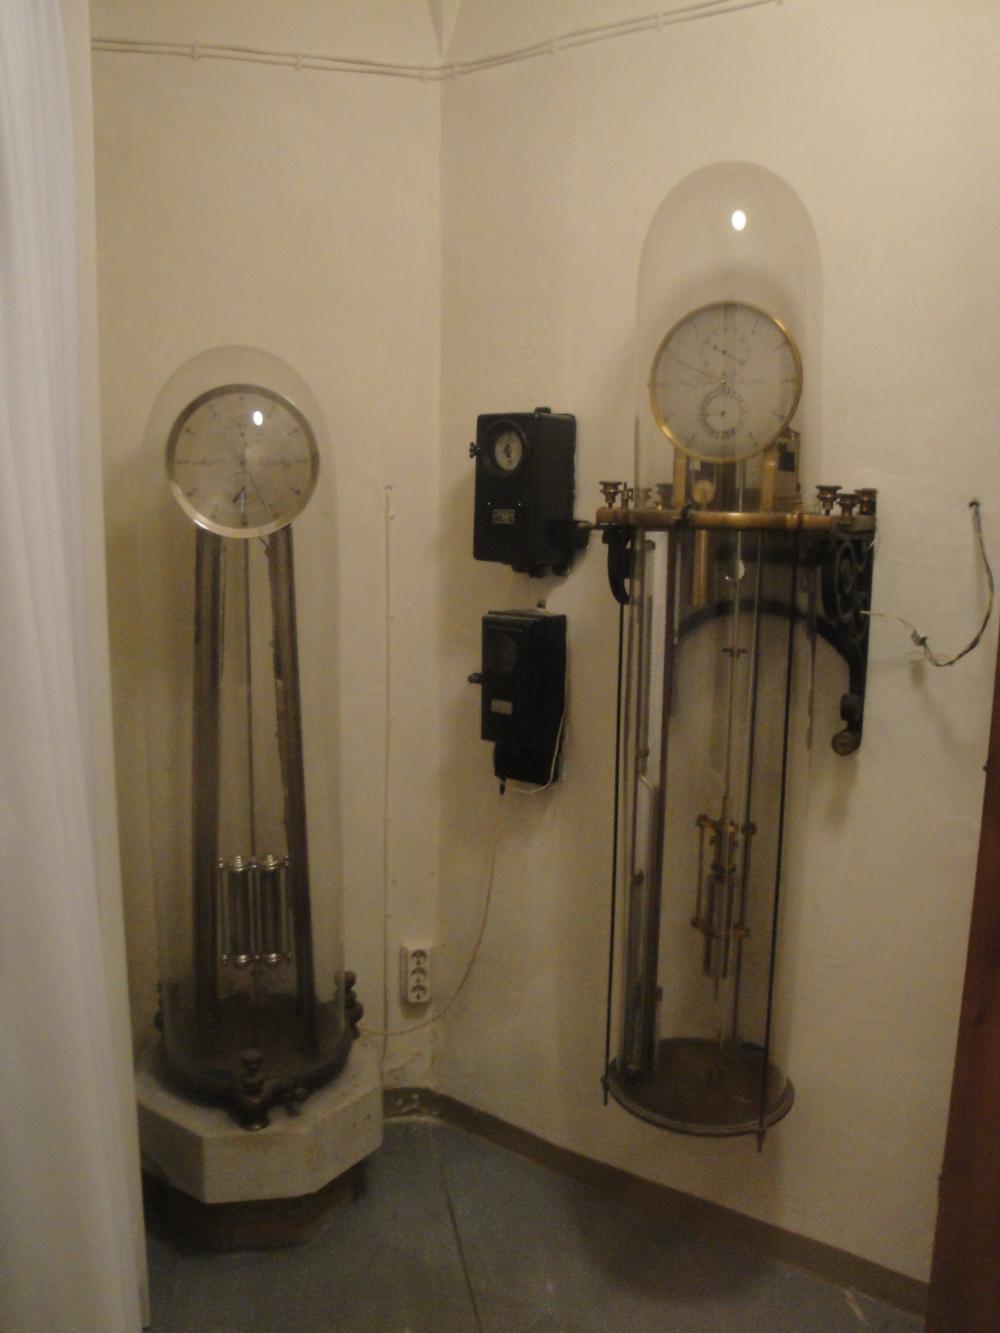 Pendulum clocks, Max Ort and Ziegler (Image courte